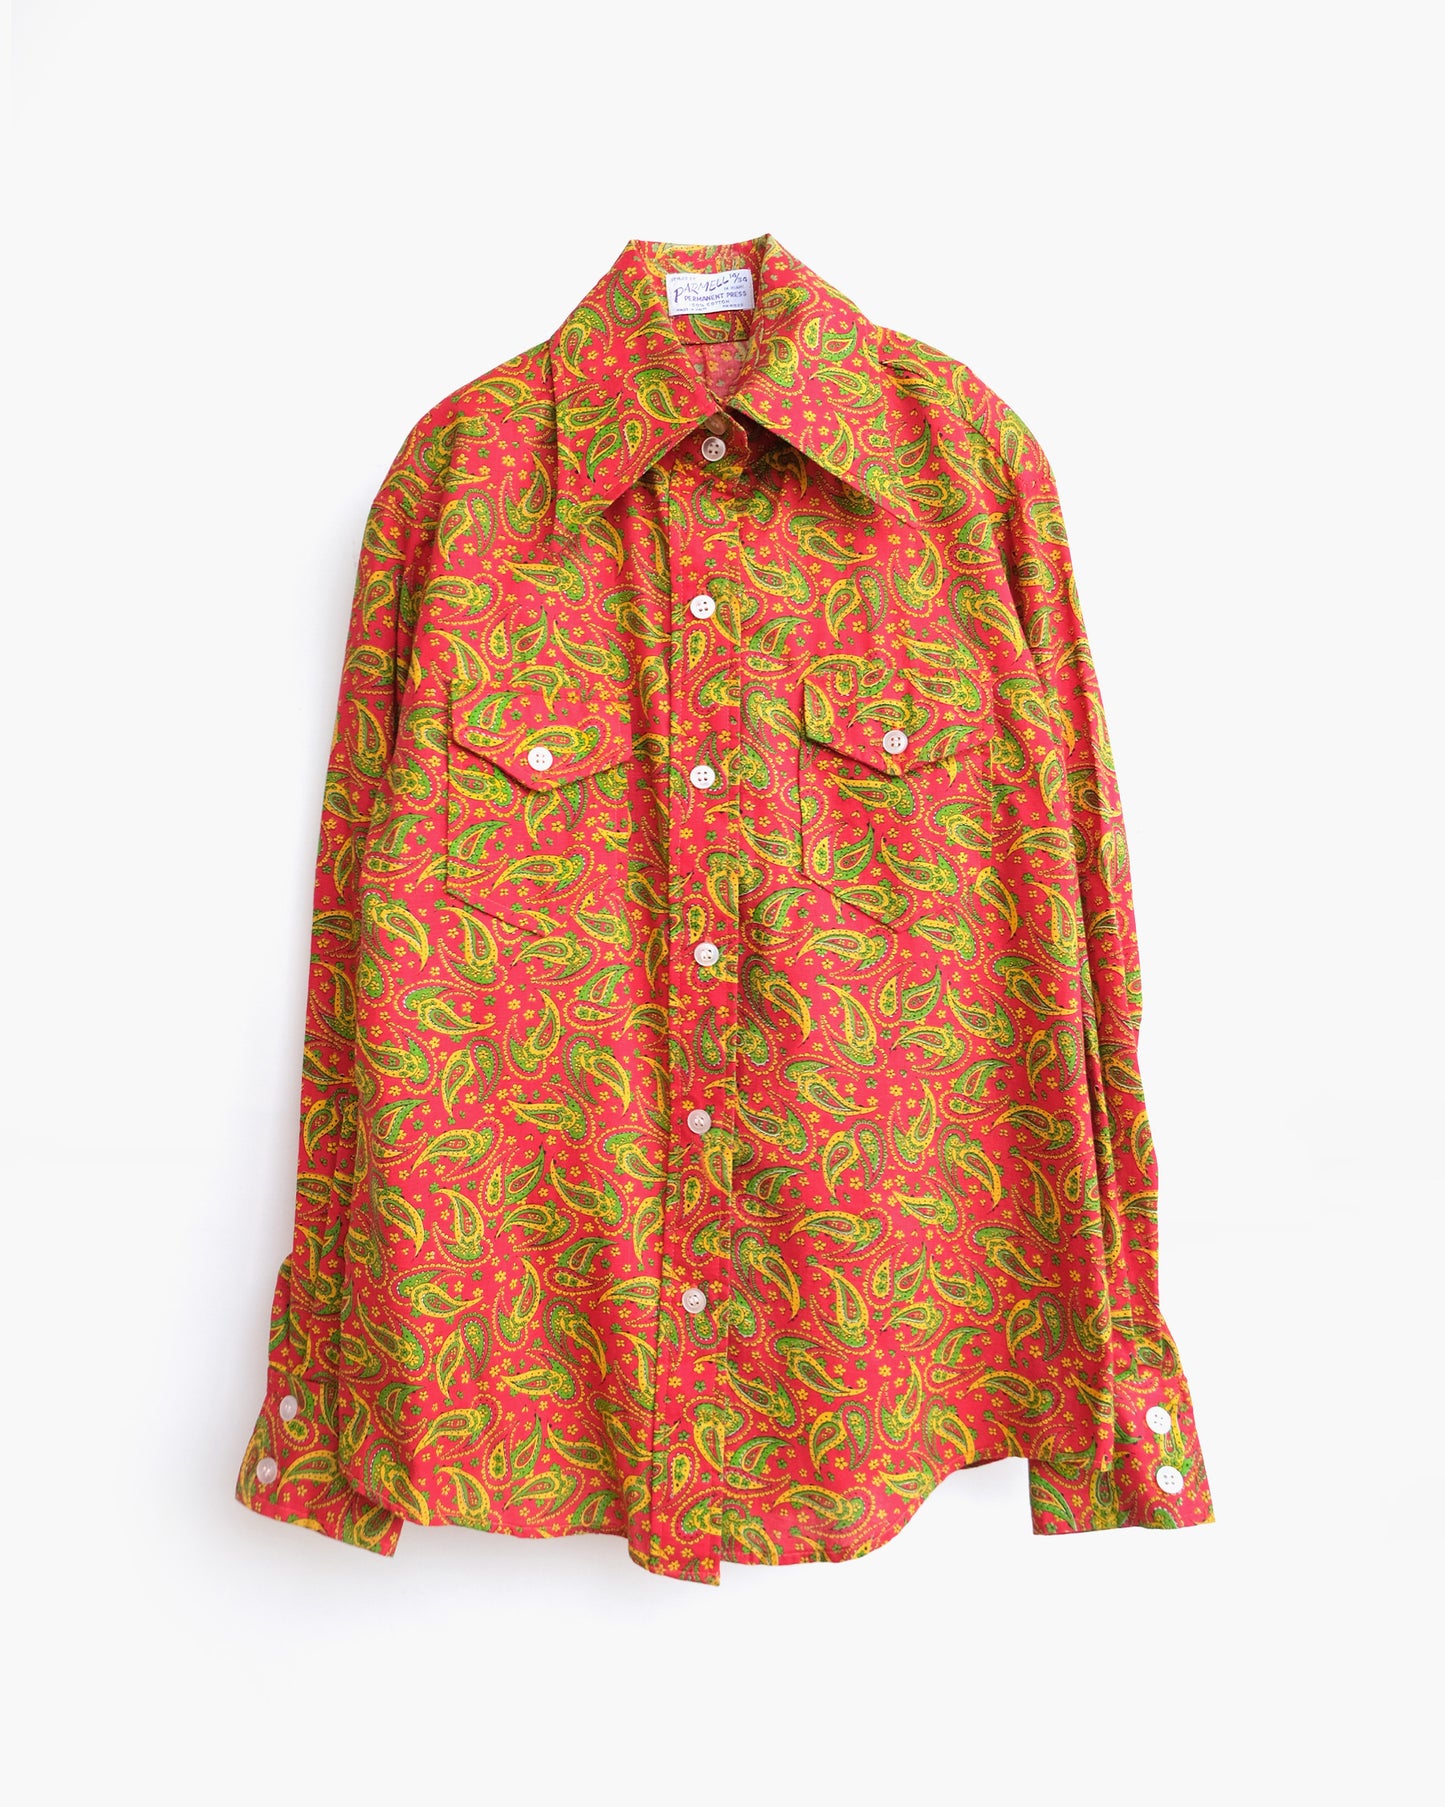 70s Patterned Cotton L/S Shirt